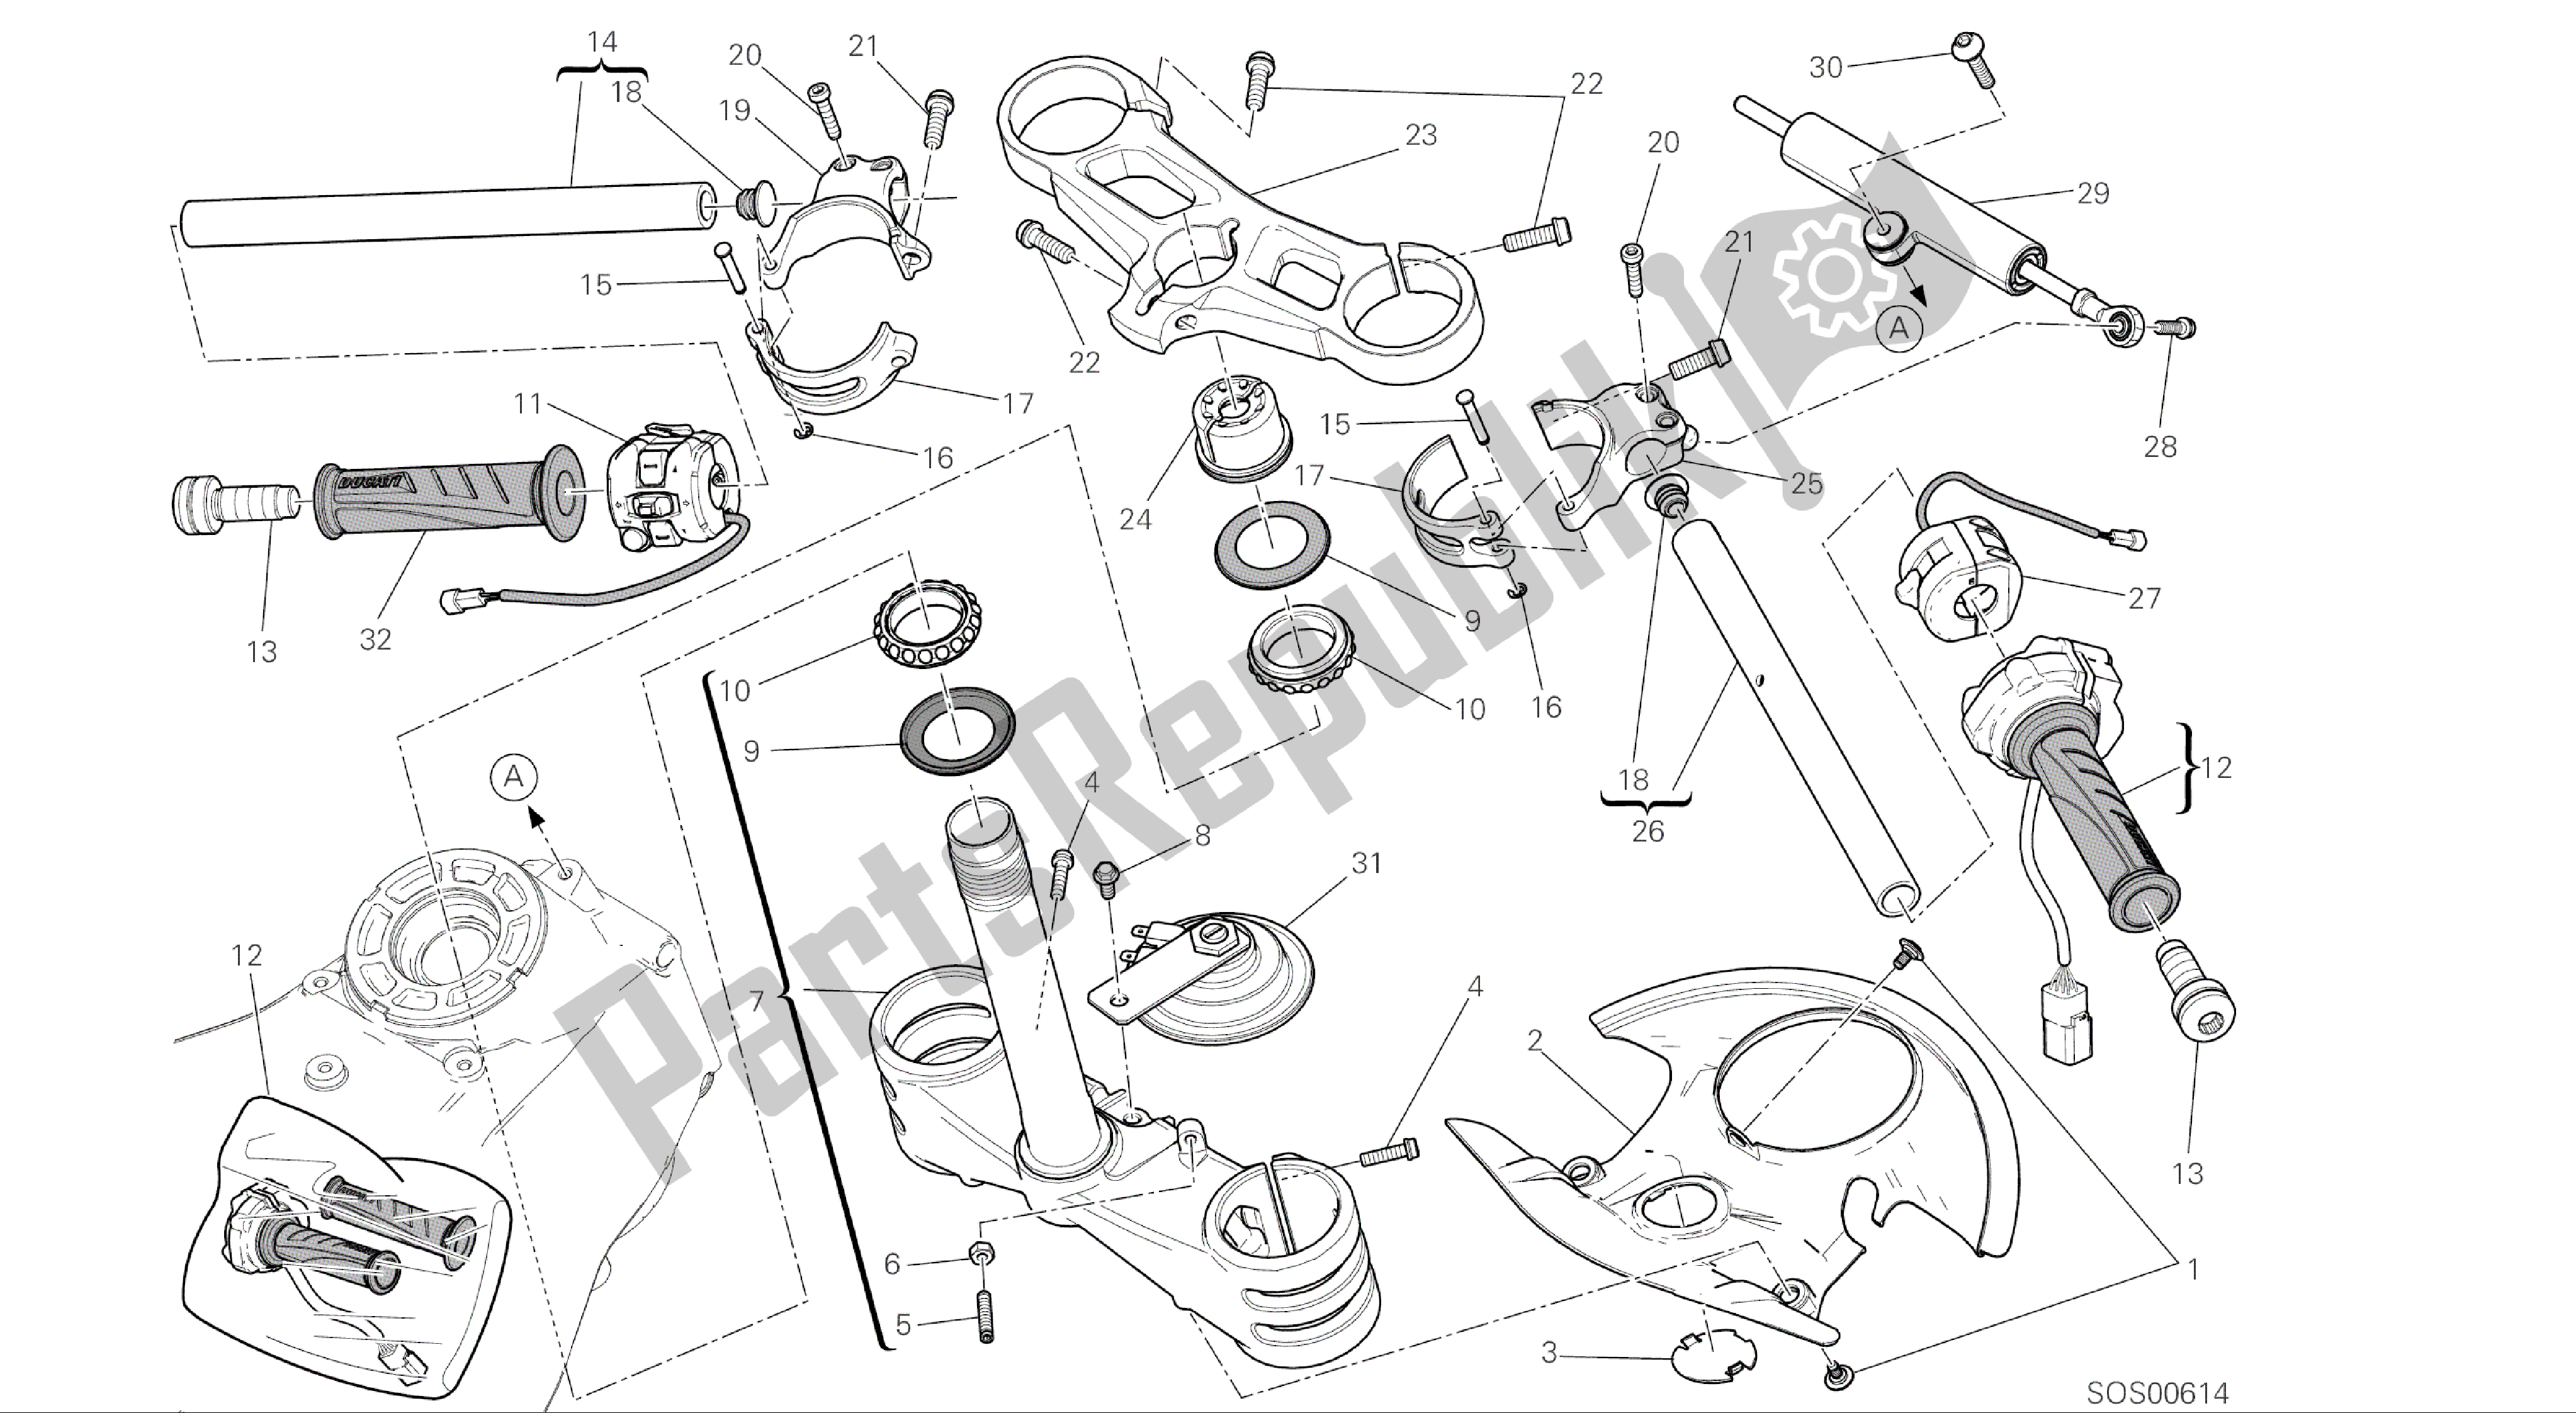 Todas las partes para Dibujo 021 - Semimanubri - Ammortizzatore Di Sterzo [mod: 1299; Xst: Marco De Grupo Aus, Eur, Fra, Jap, Twn] de Ducati Panigale ABS 1299 2016